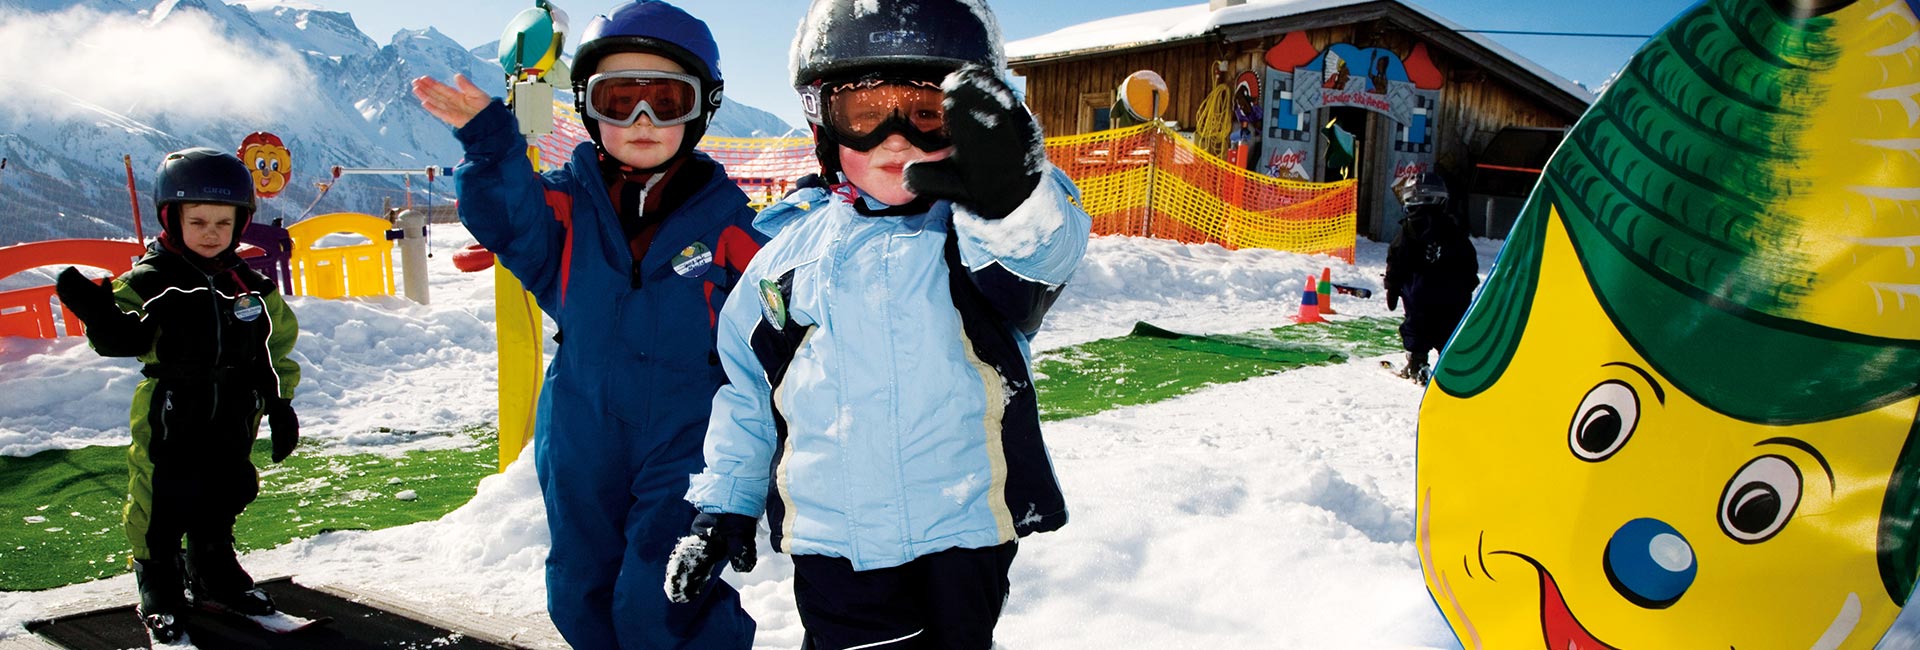 Kinder lernen spielerisch den Spaß am Wintersport